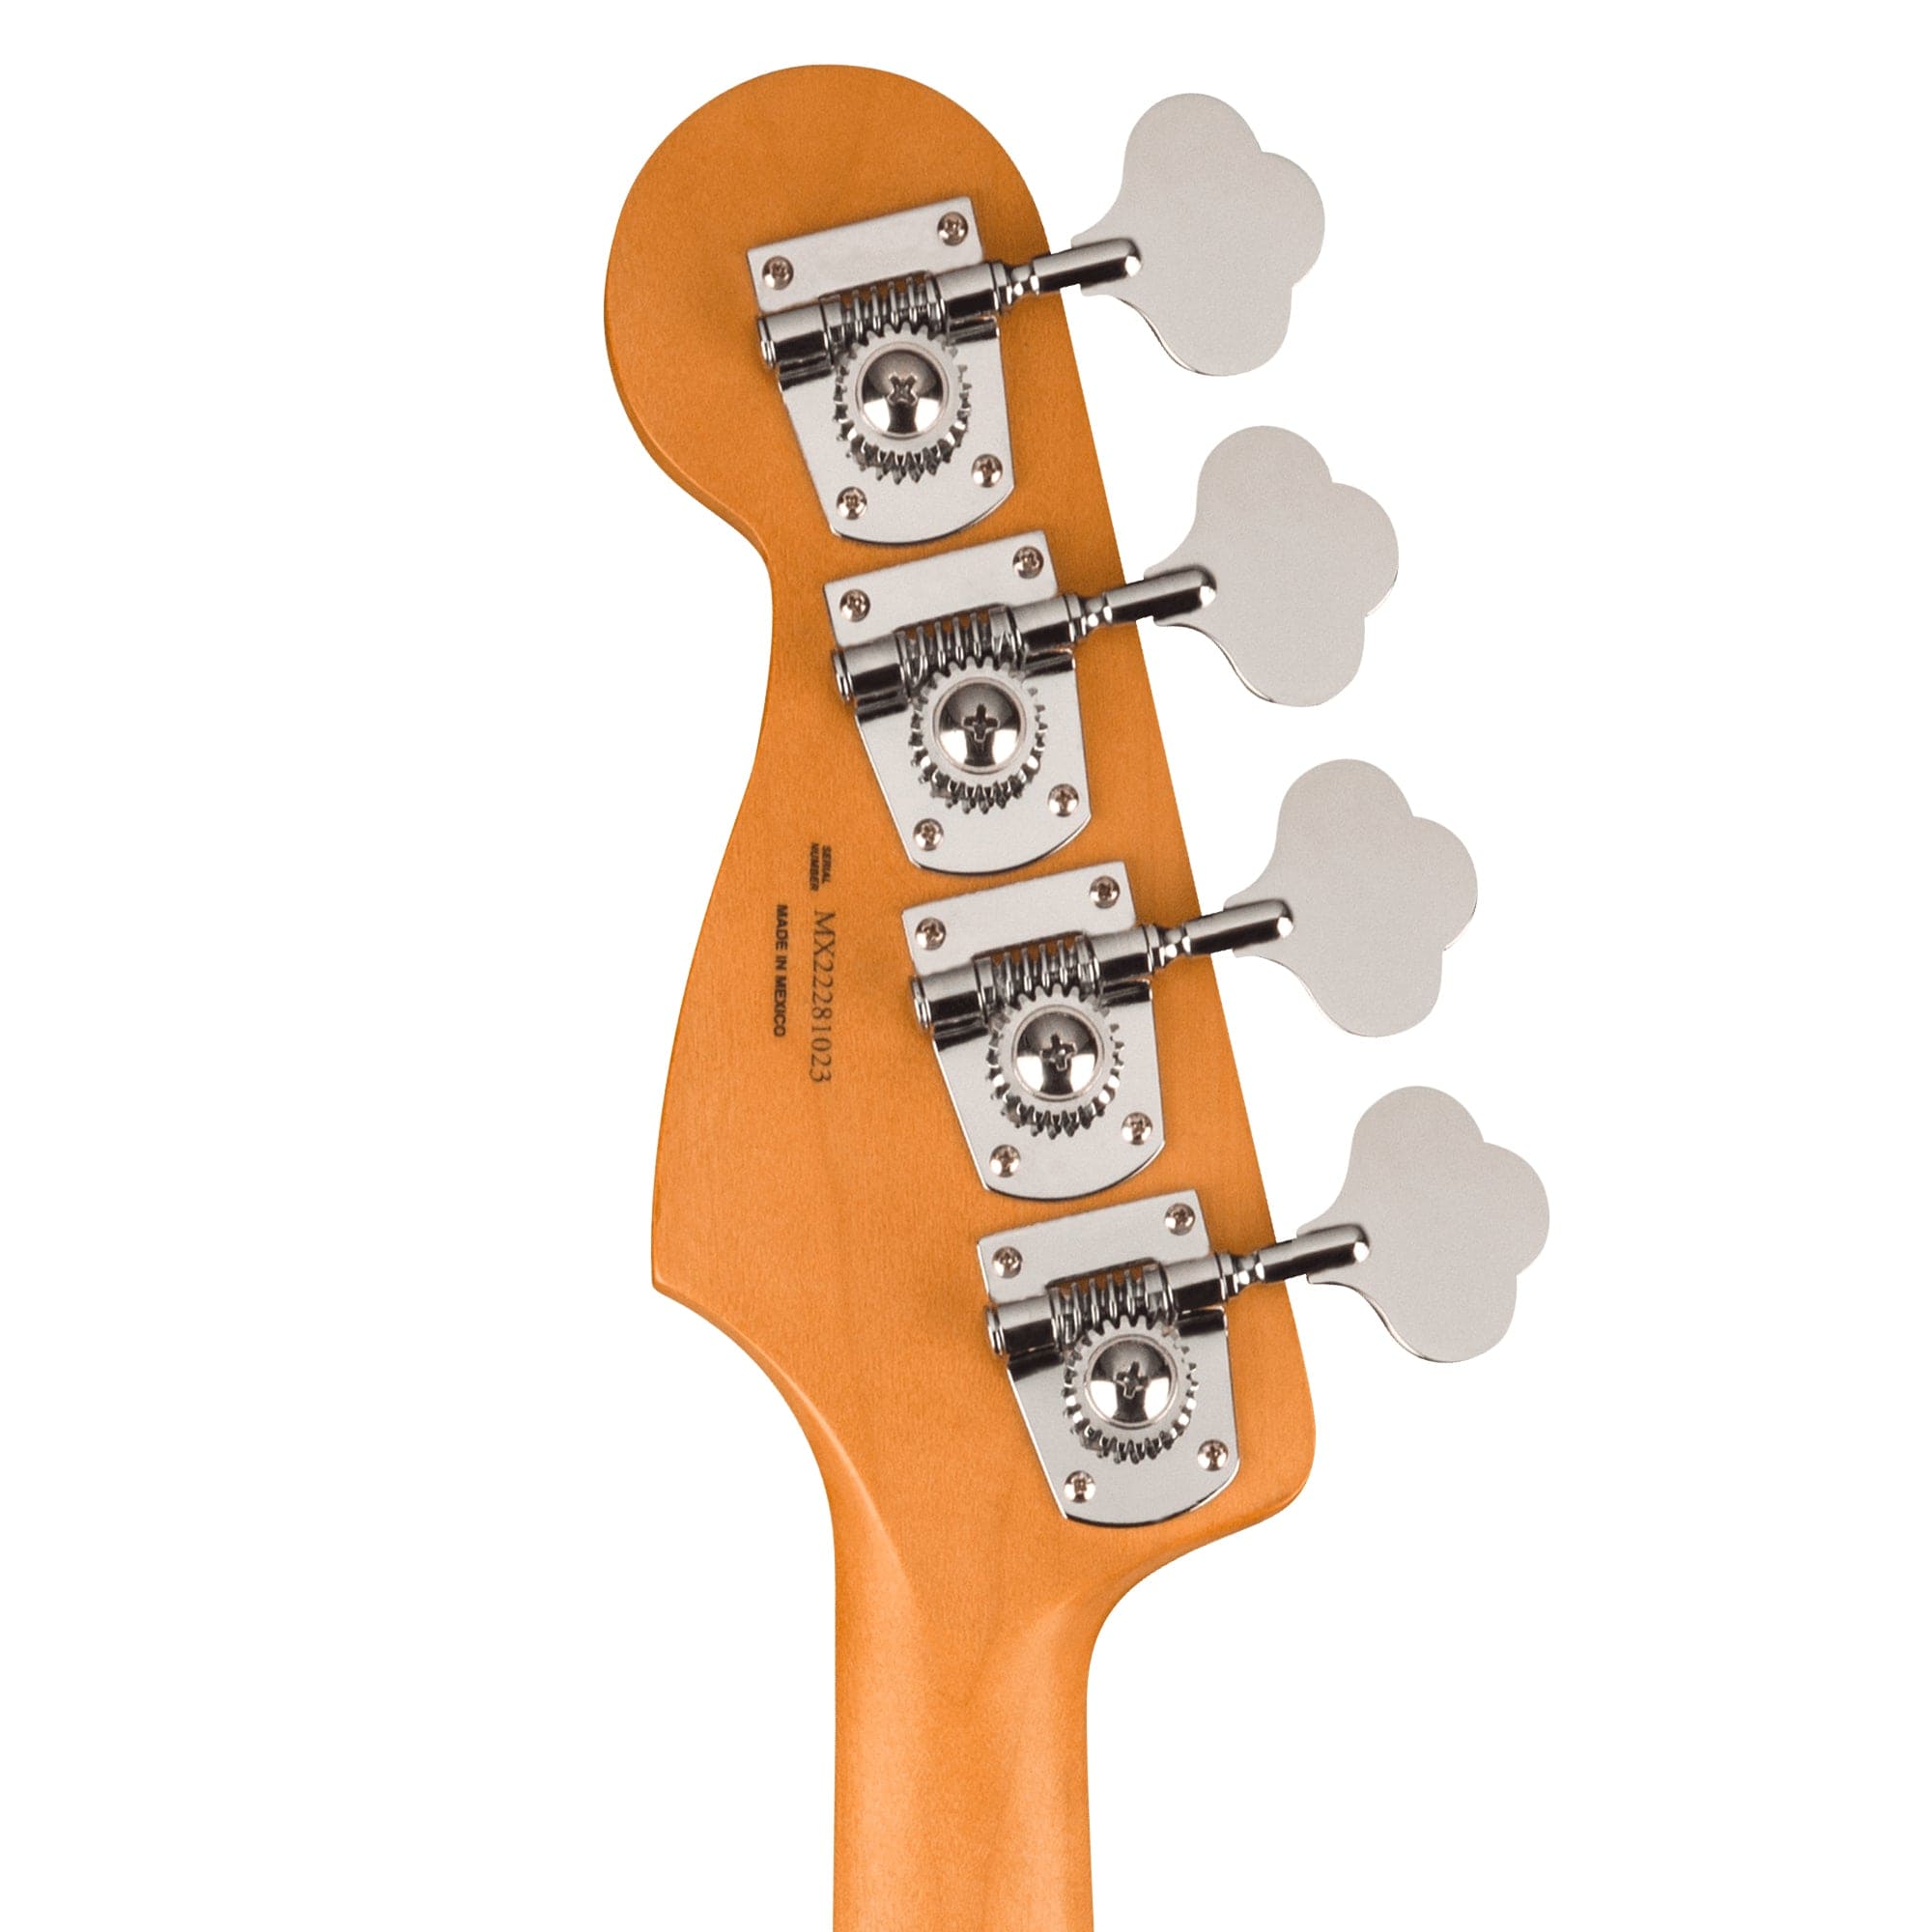 Fender Player Plus Jazz Bass Sienna Sunburst Bass Guitars / 4-String